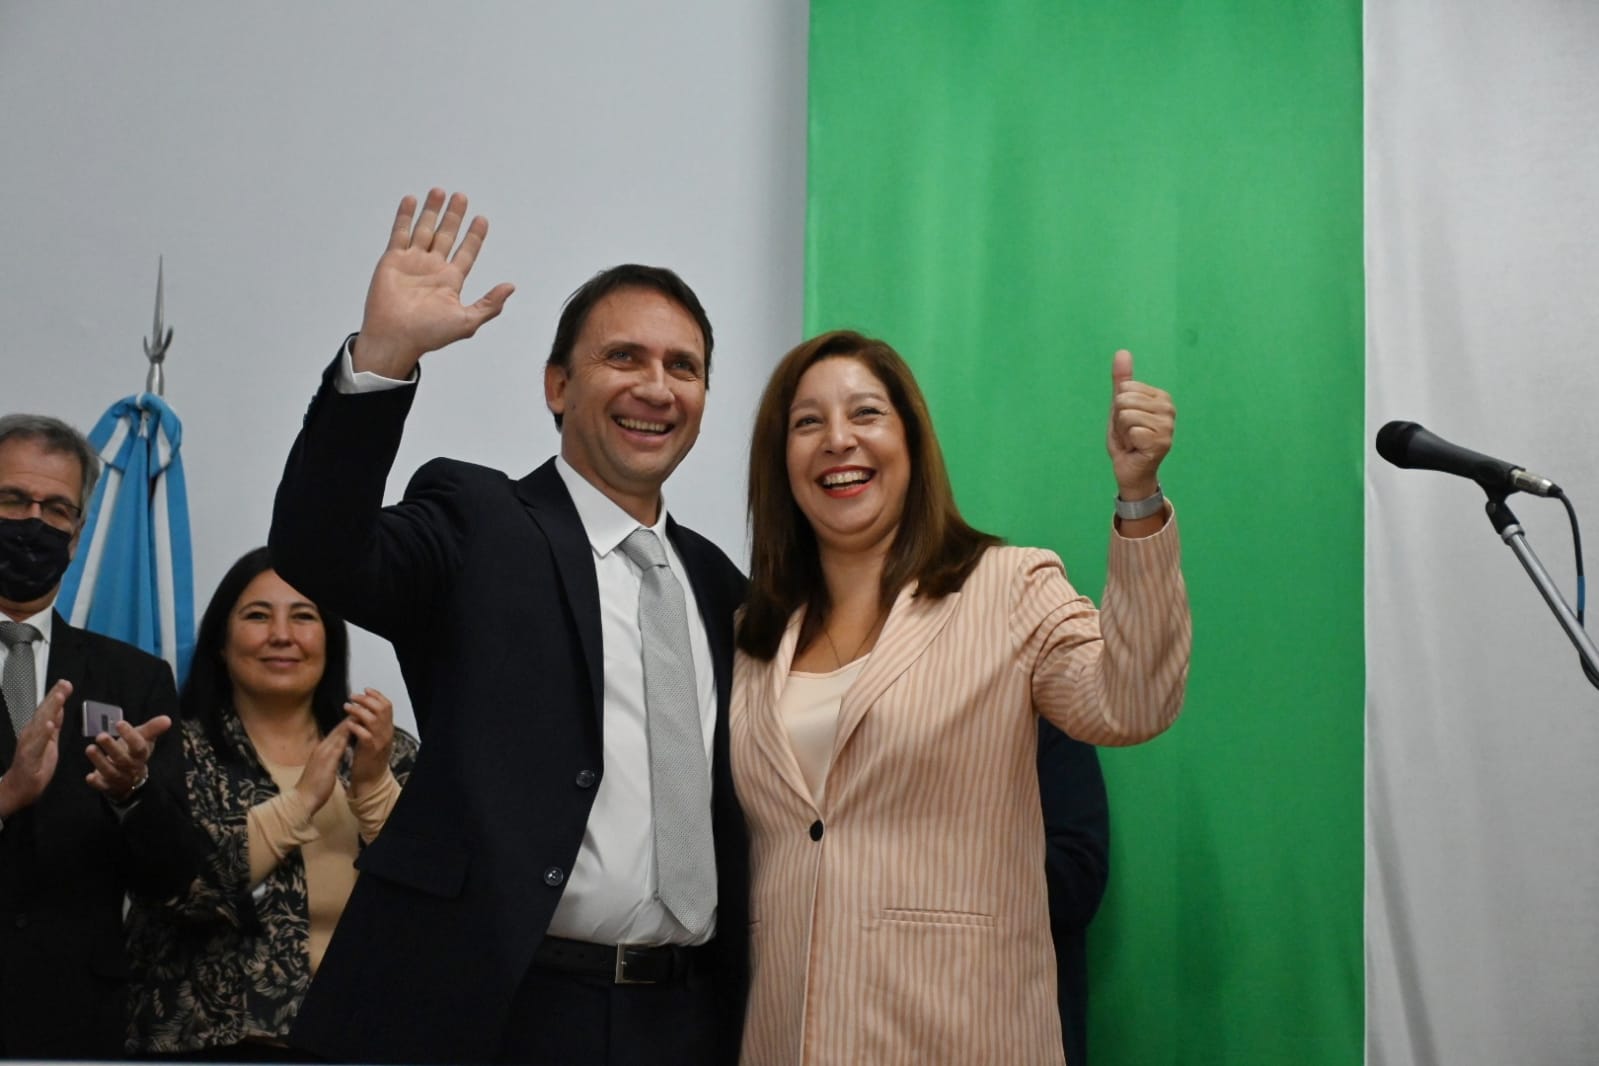 Festivo acto de asunción de Pablo Núñez en el ministro de Educación. La gobernadora Arabela Carreras acompañó ese entusiasmo. Foto: Marcelo Ochoa.